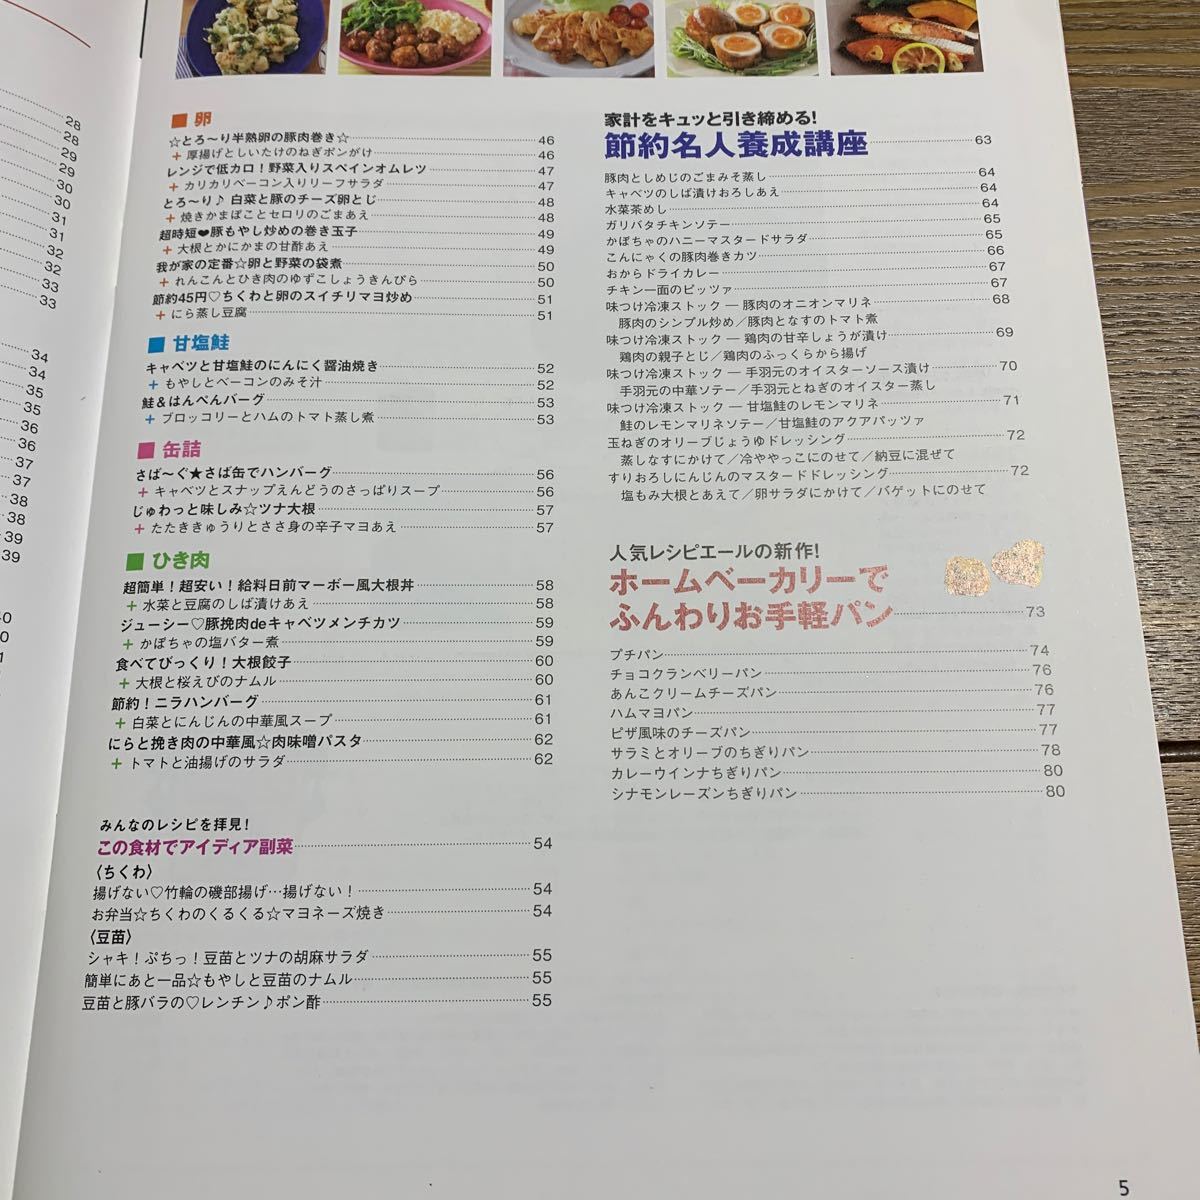 晩ごはん献立 cookpad×オレンジページ/レシピ